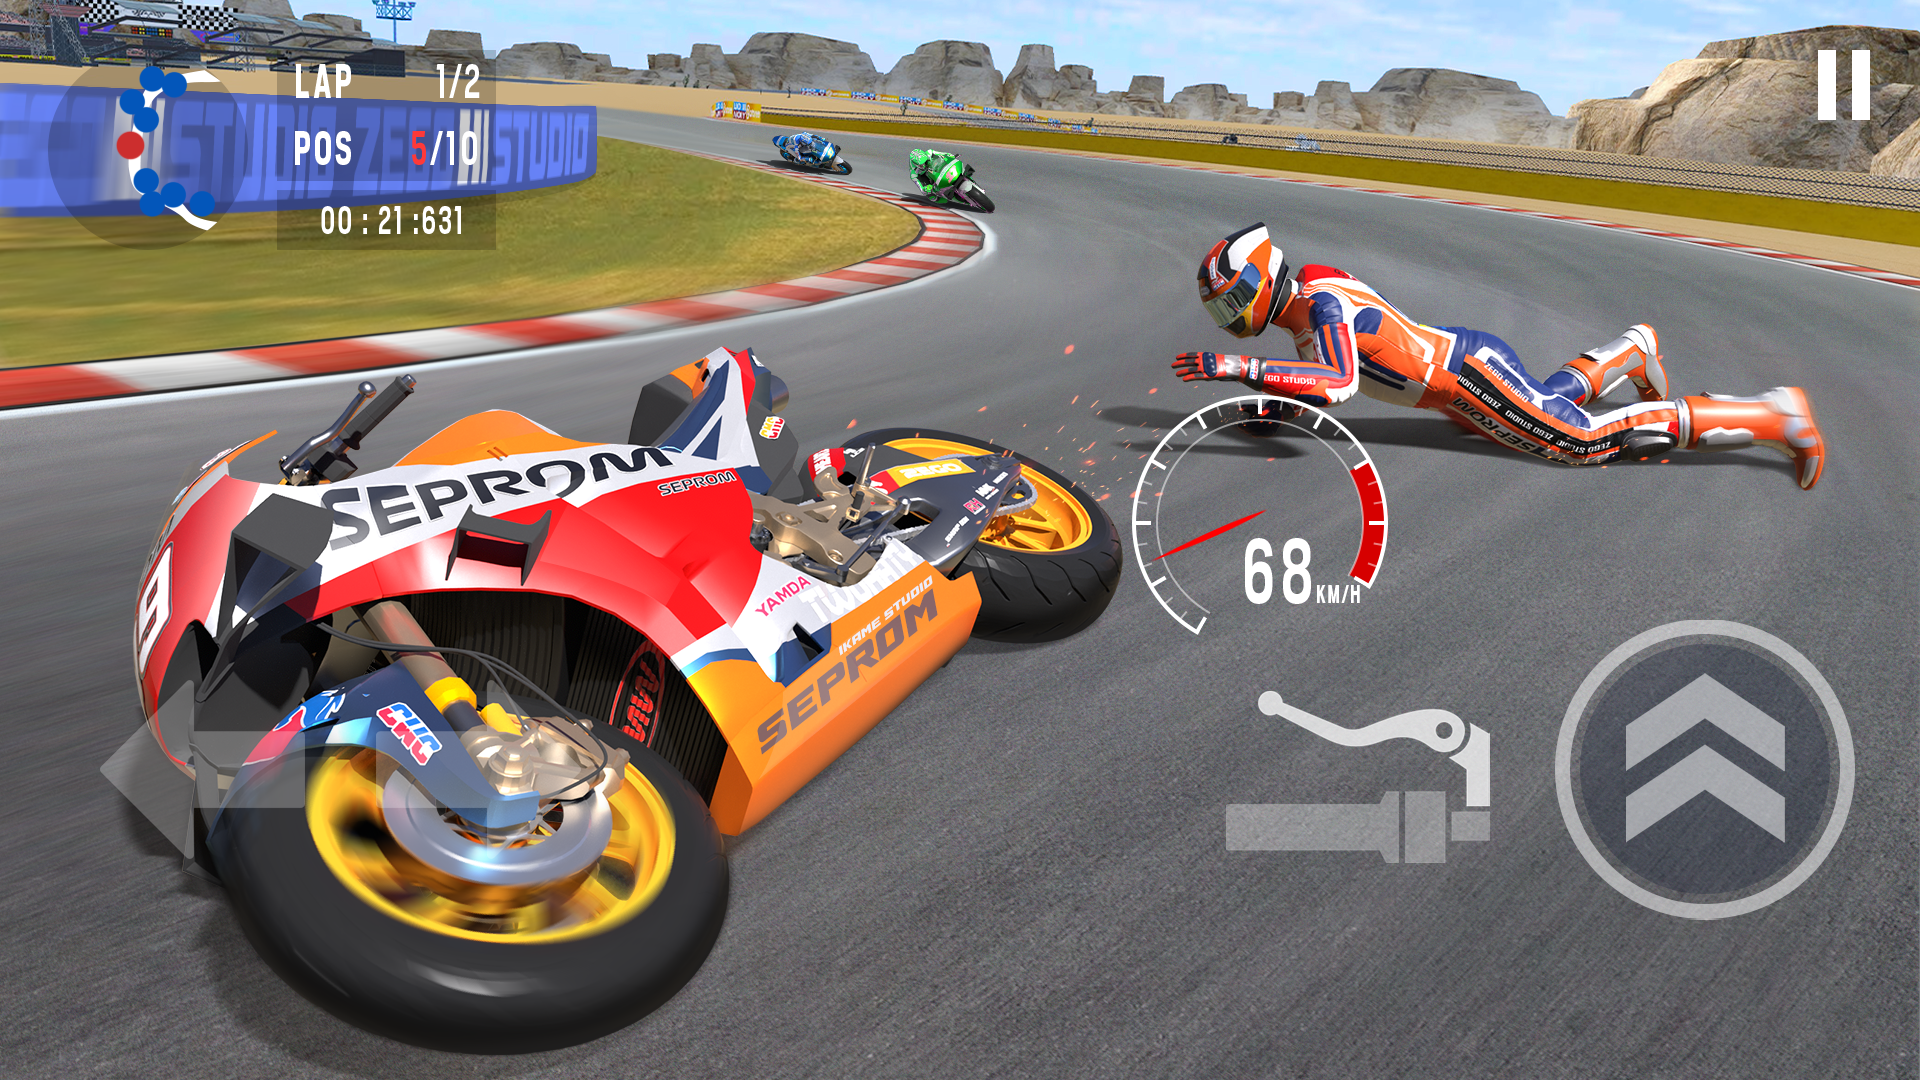 Moto Rider, Bike Racing Game 게임 스크린 샷